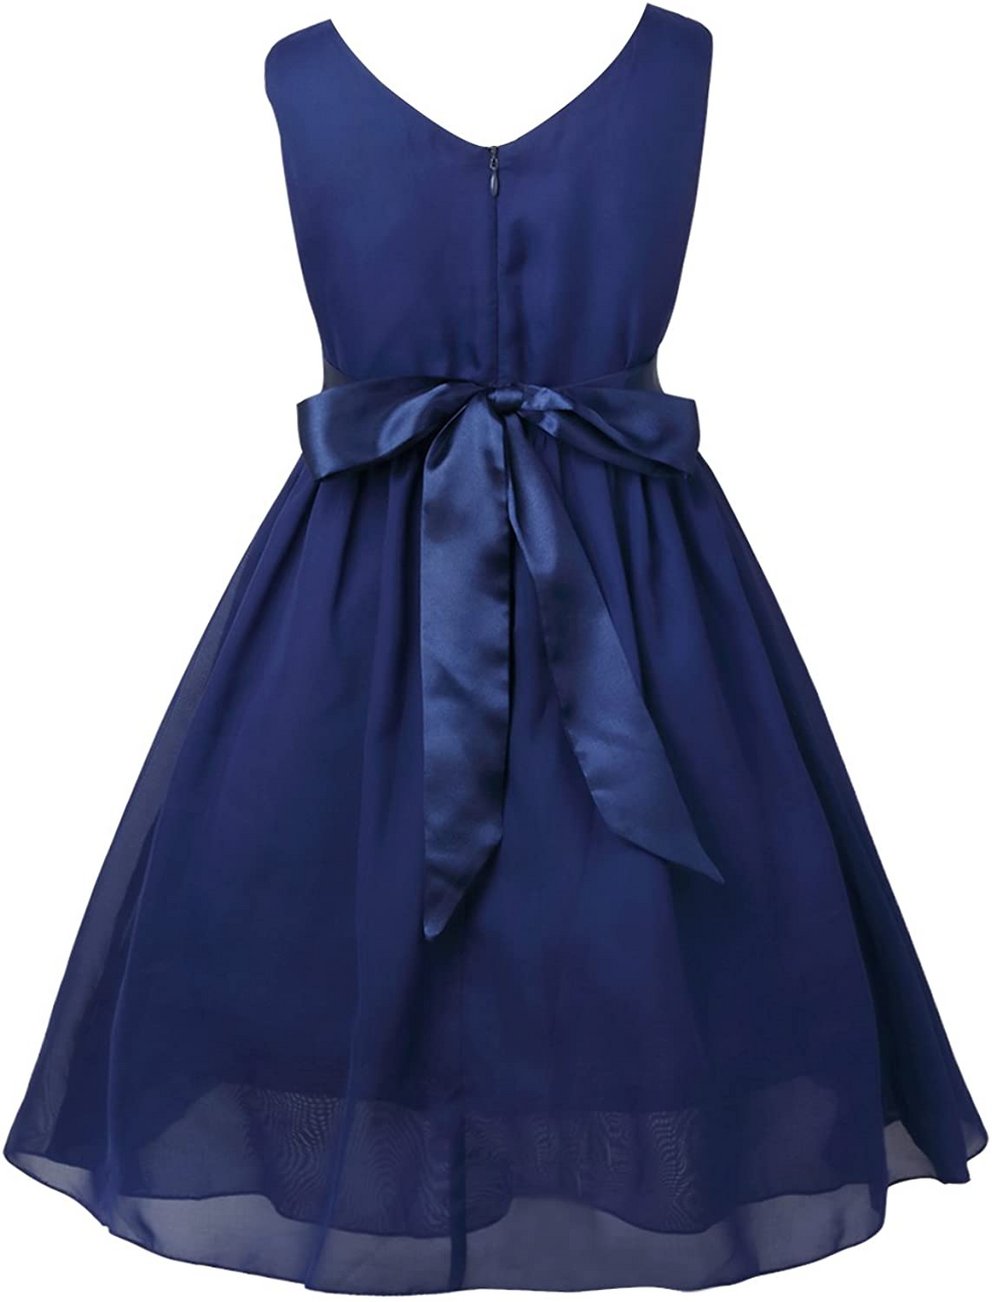 Taufkleider Mädchen: Wundervolles Prinzessinnenkleid in dunkelblau